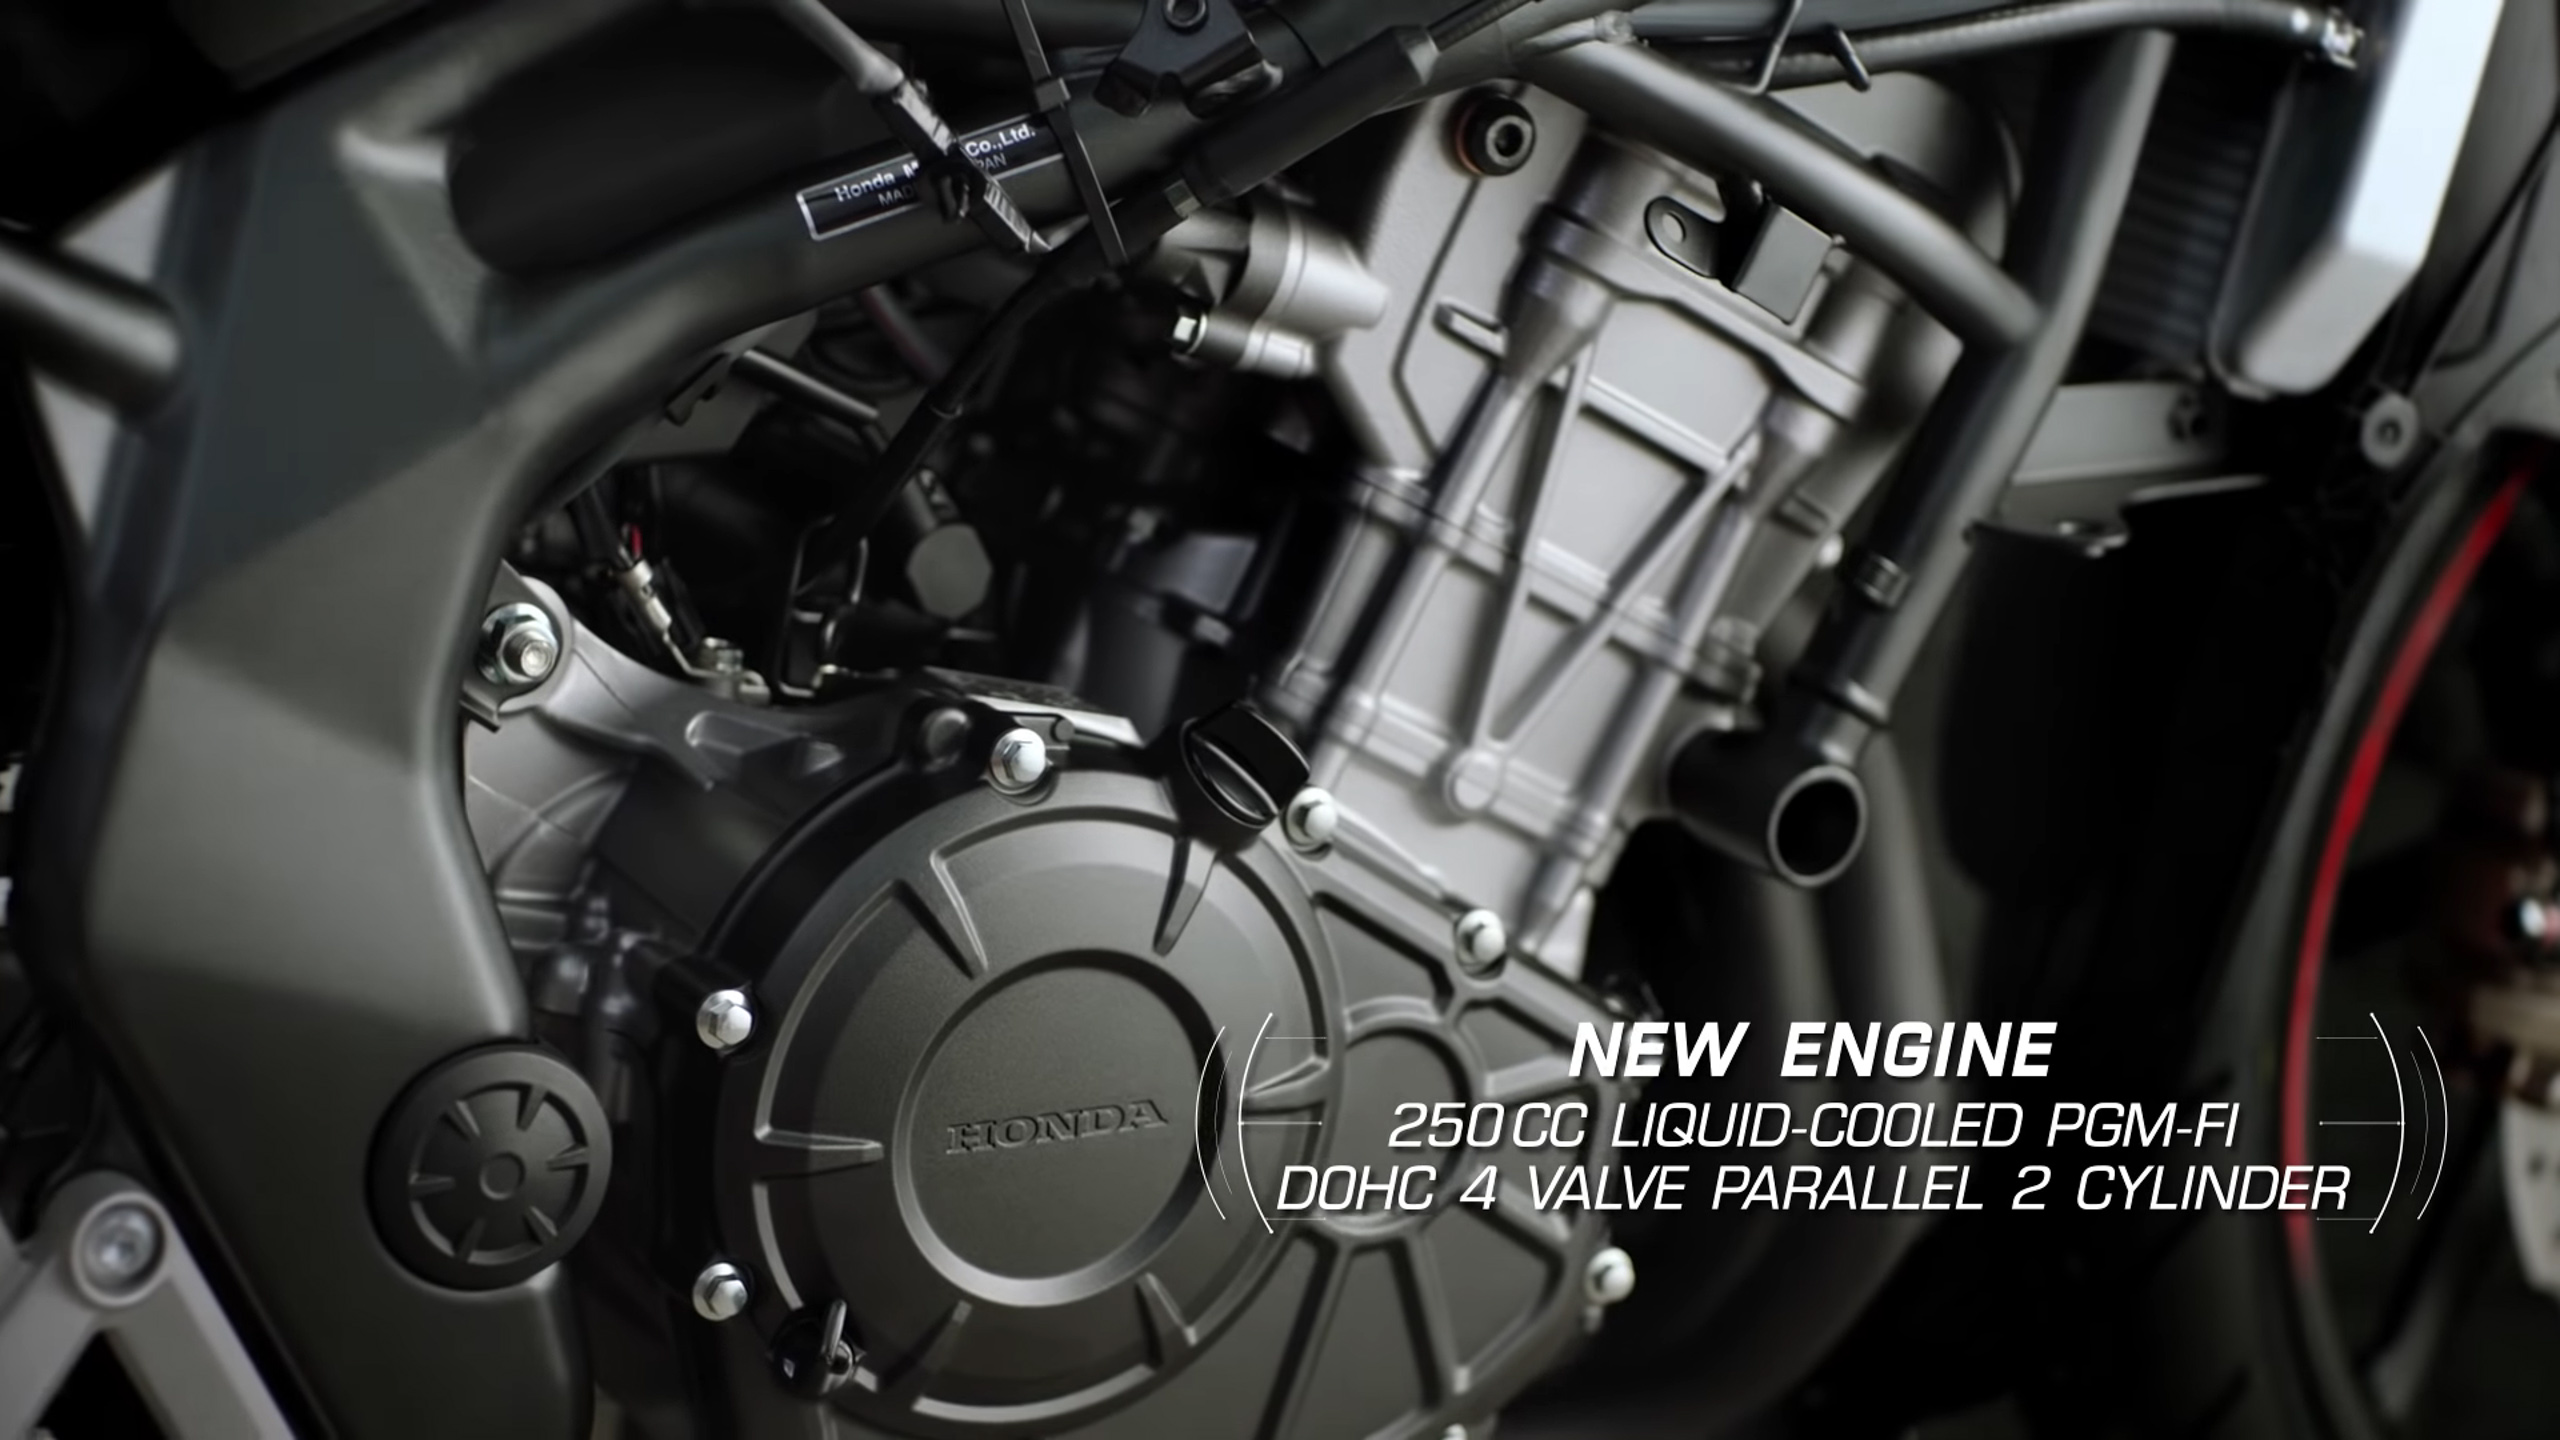 Honda CBR250RR bản năm 2020 sẽ có khoá thông minh và chuyển số nhanh